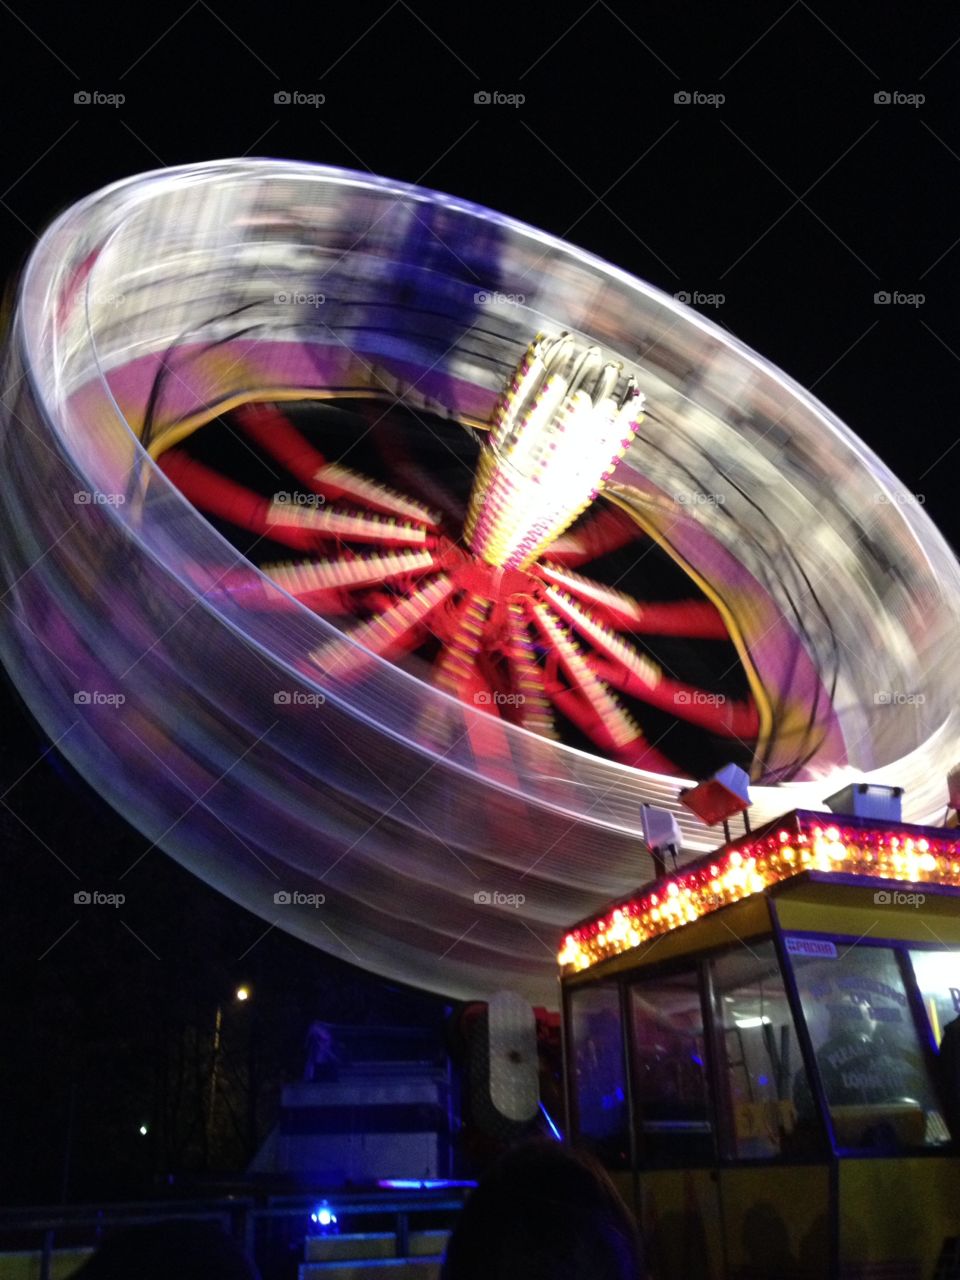 Spinning carnival ride!